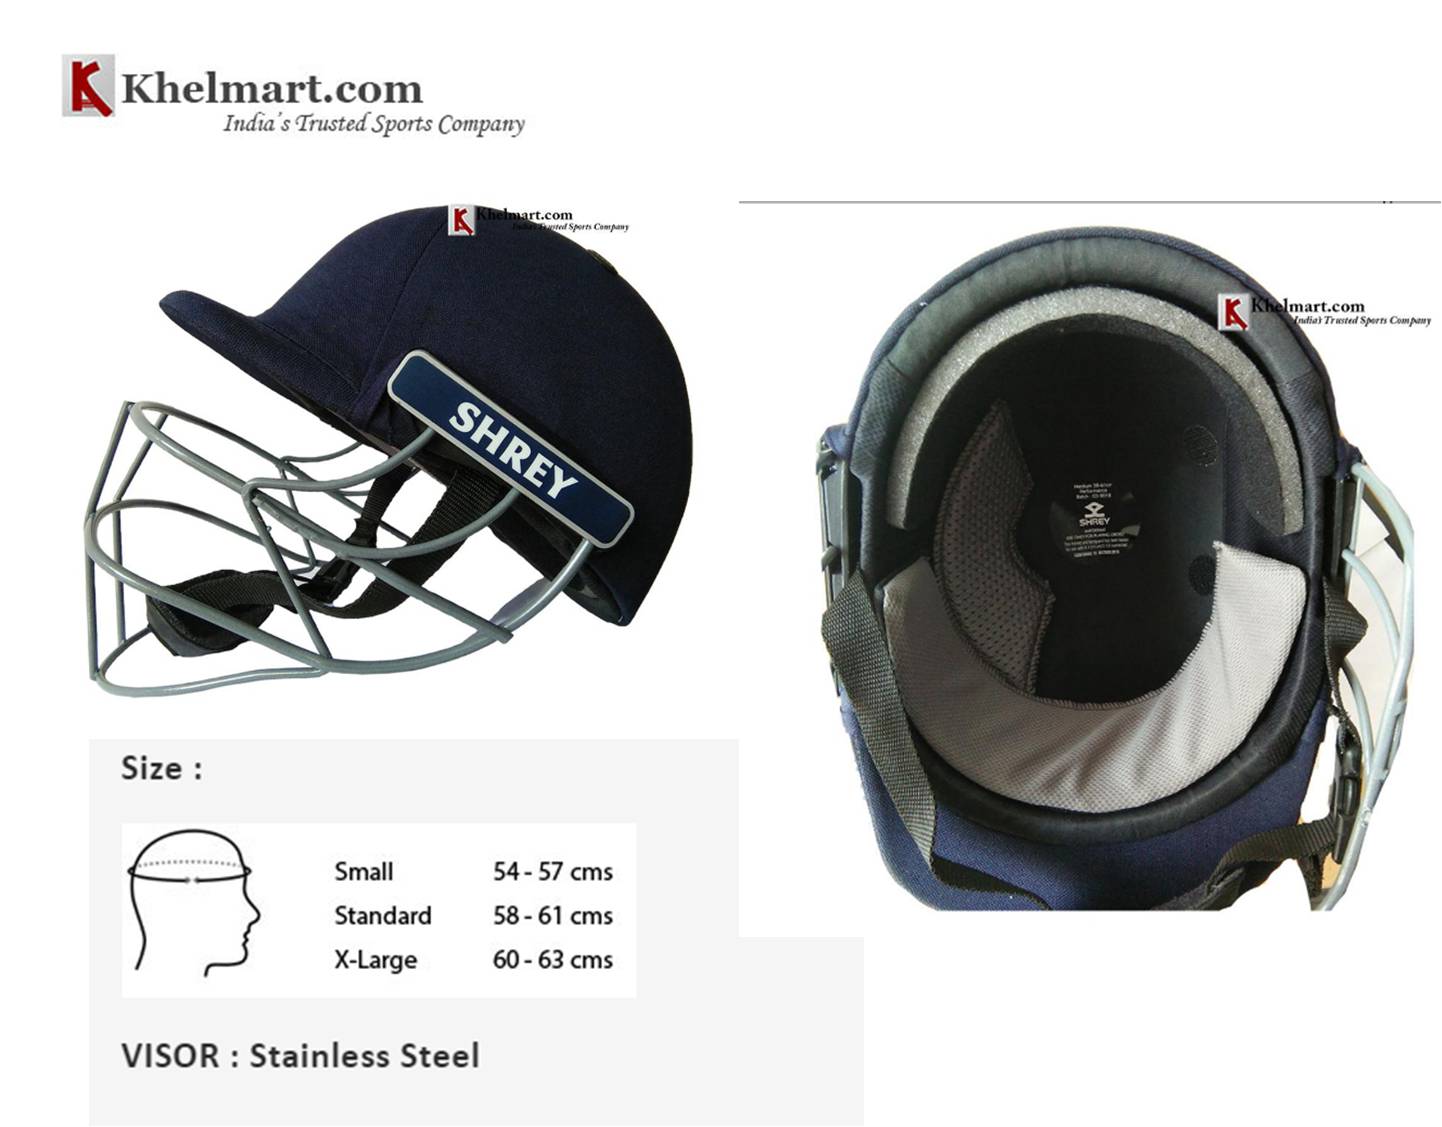  Shrey_Performance_Cricket_Helmet 